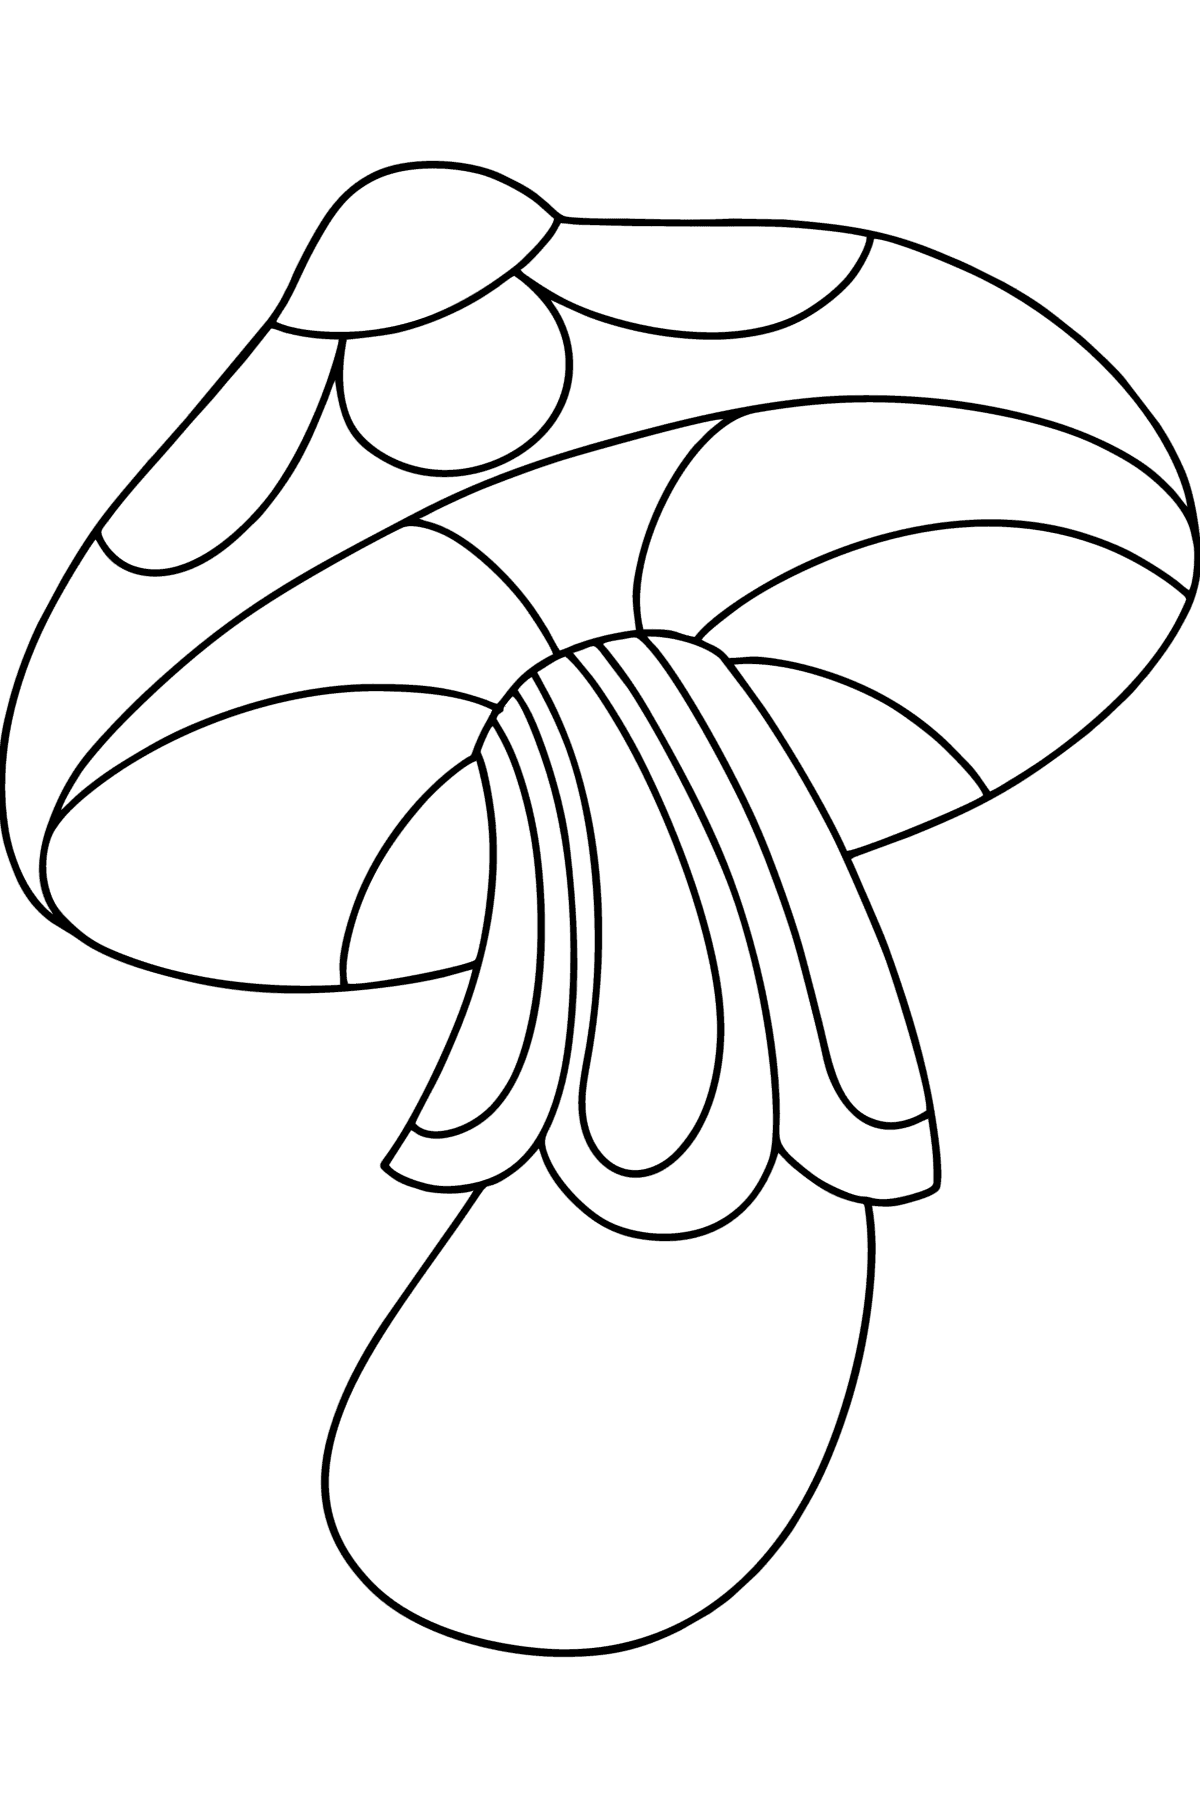 Ausmalbild Zentangle Pilz - Malvorlagen für Kinder